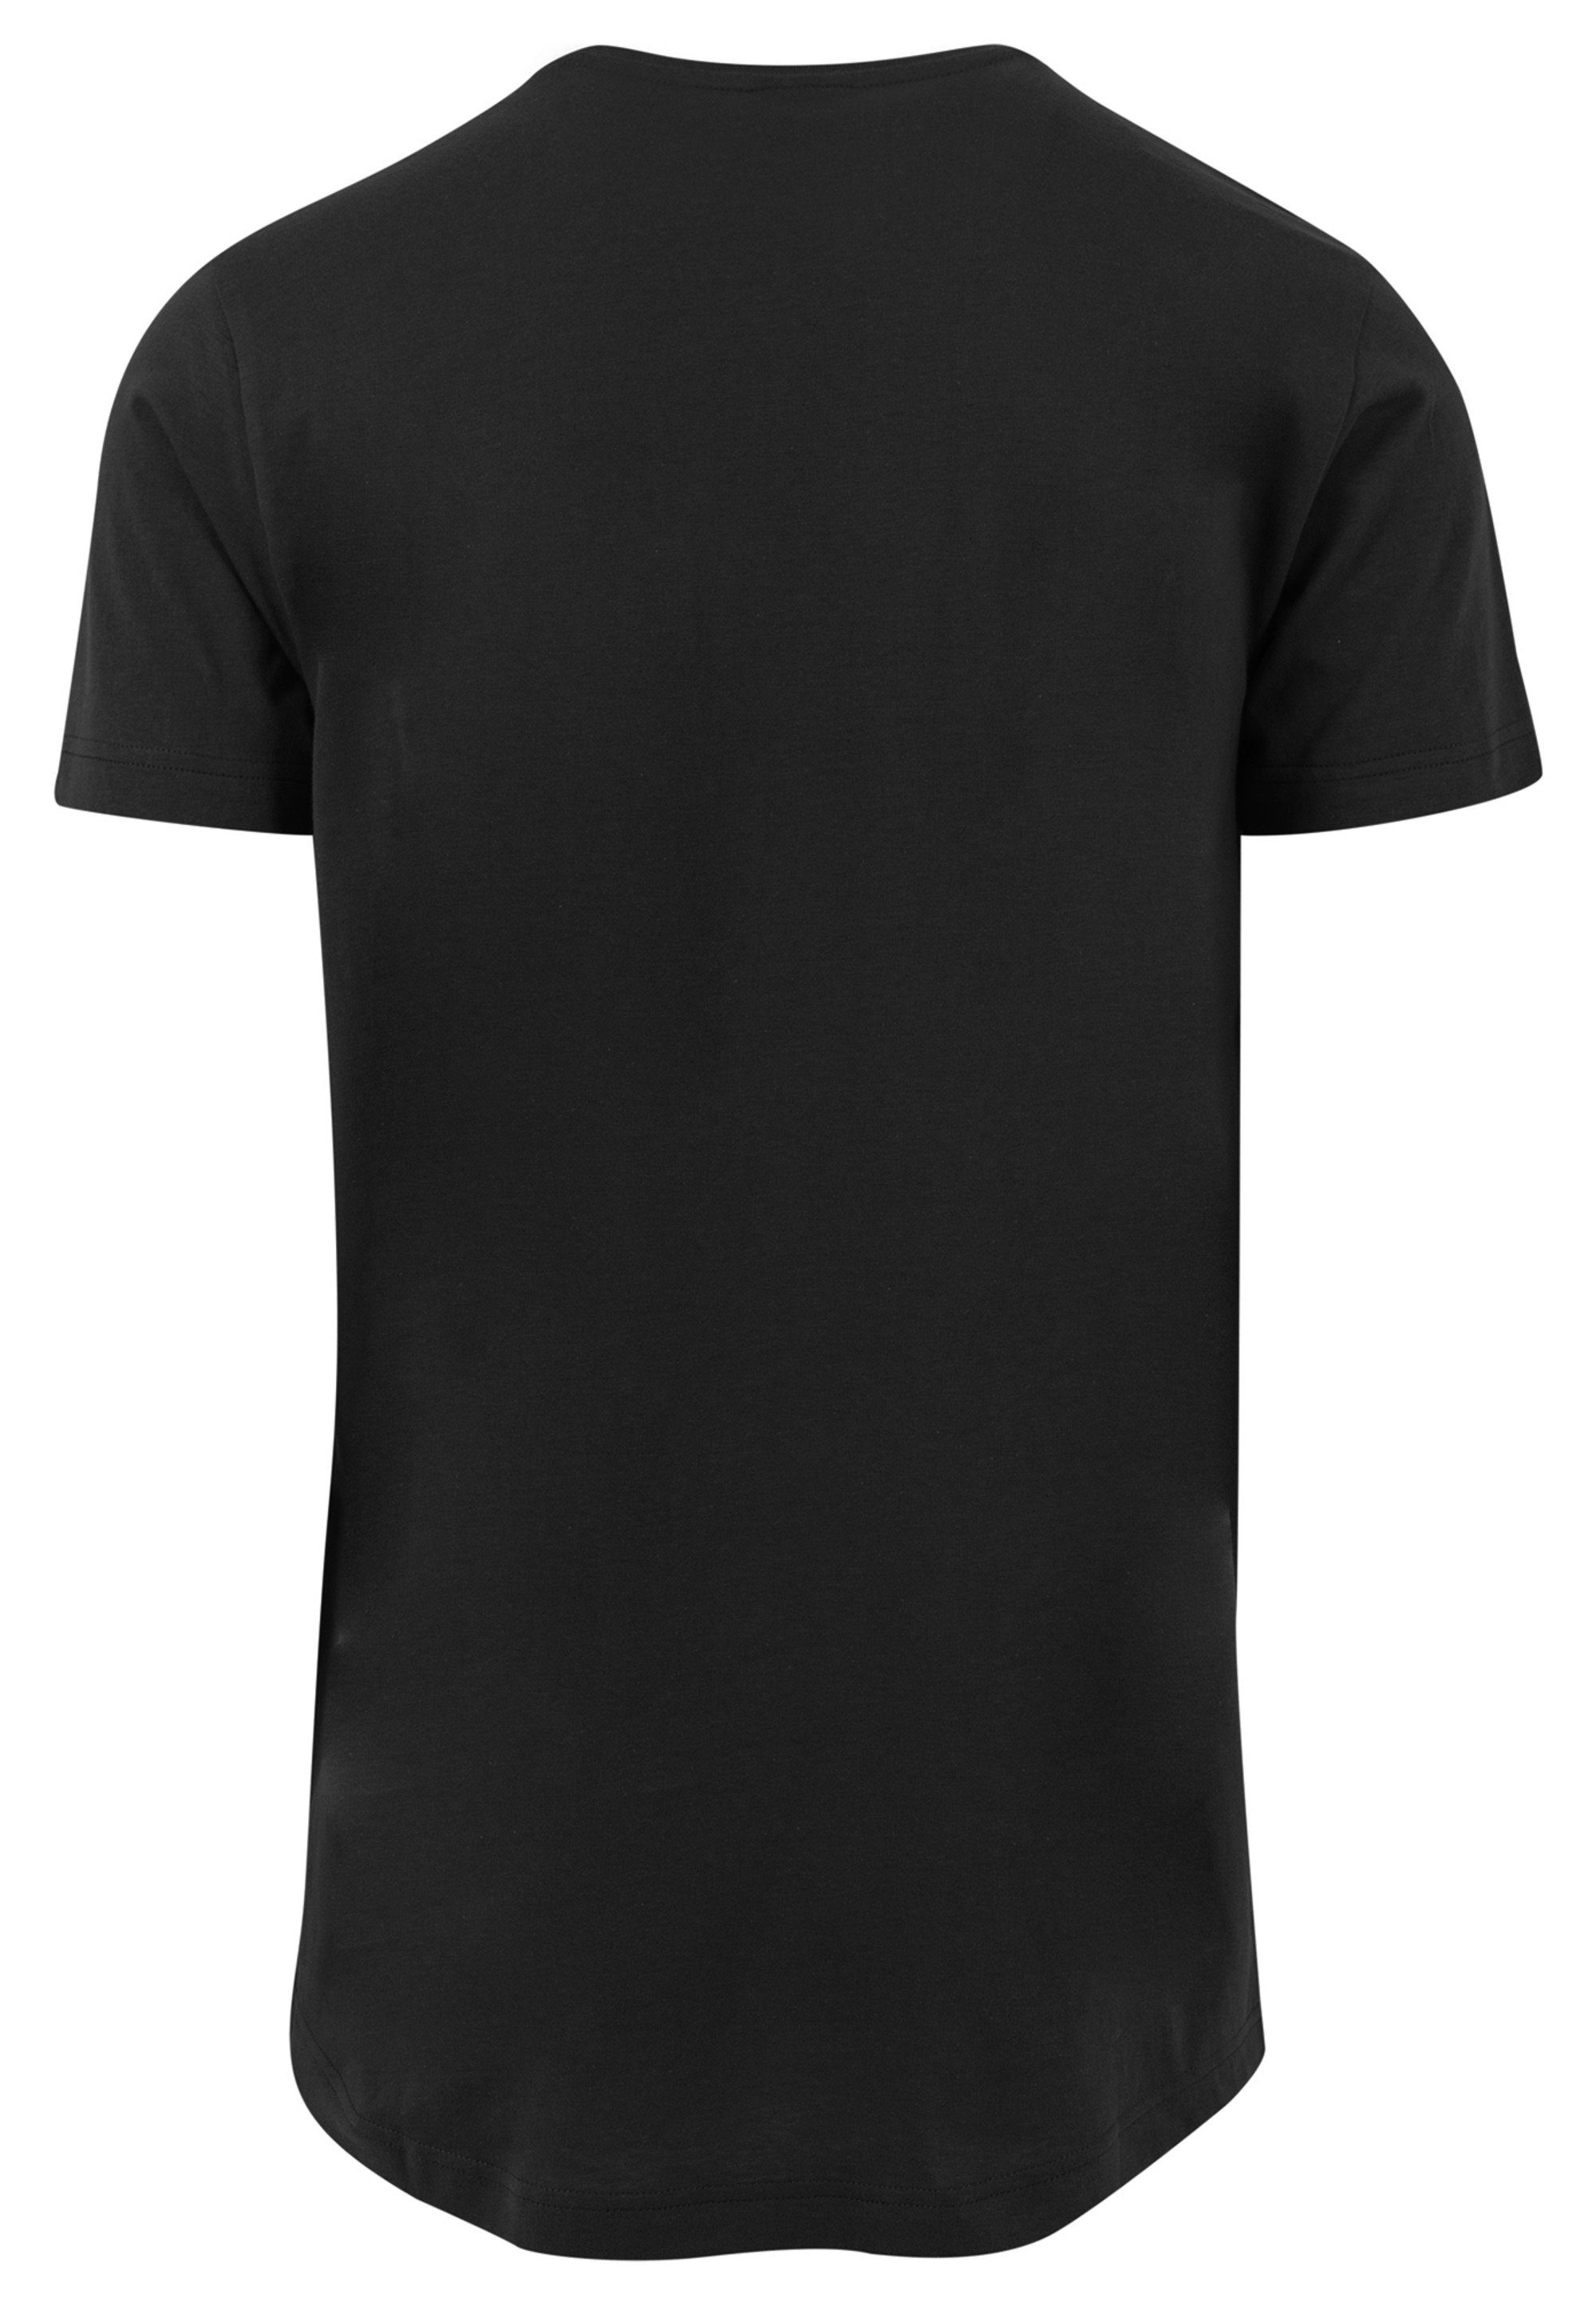 F4NT4STIC T-Shirt F4NT4STIC Long Merch,Lang,Longshirt,Bedruckt T-Shirt Herren,Premium Cut